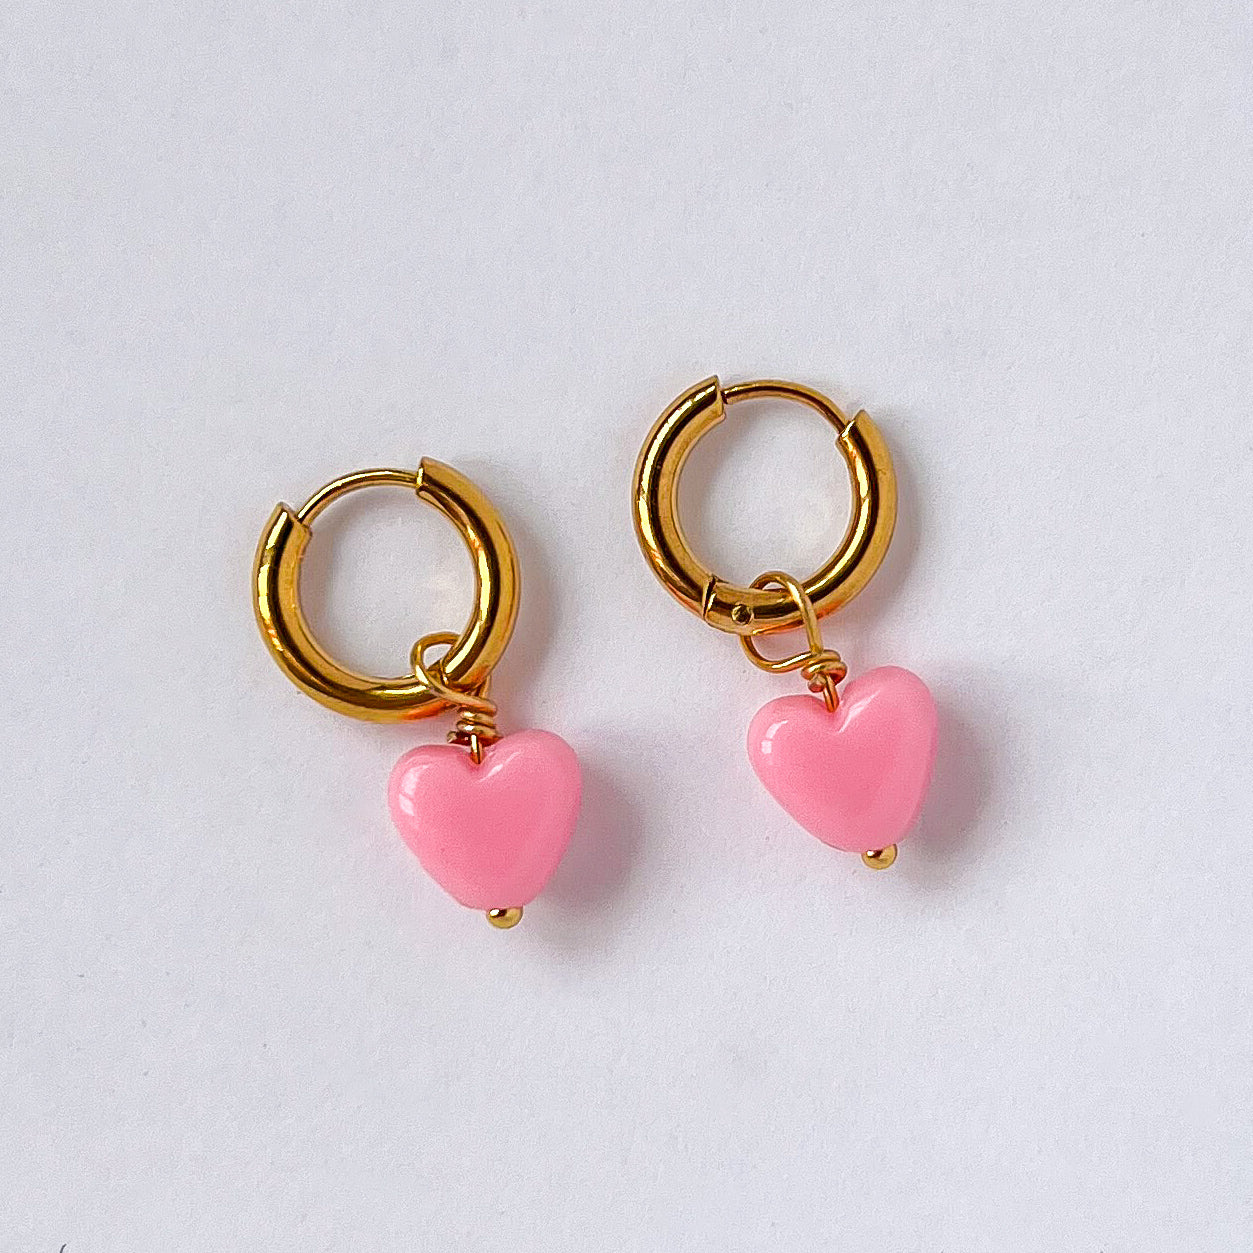 Heart earrings